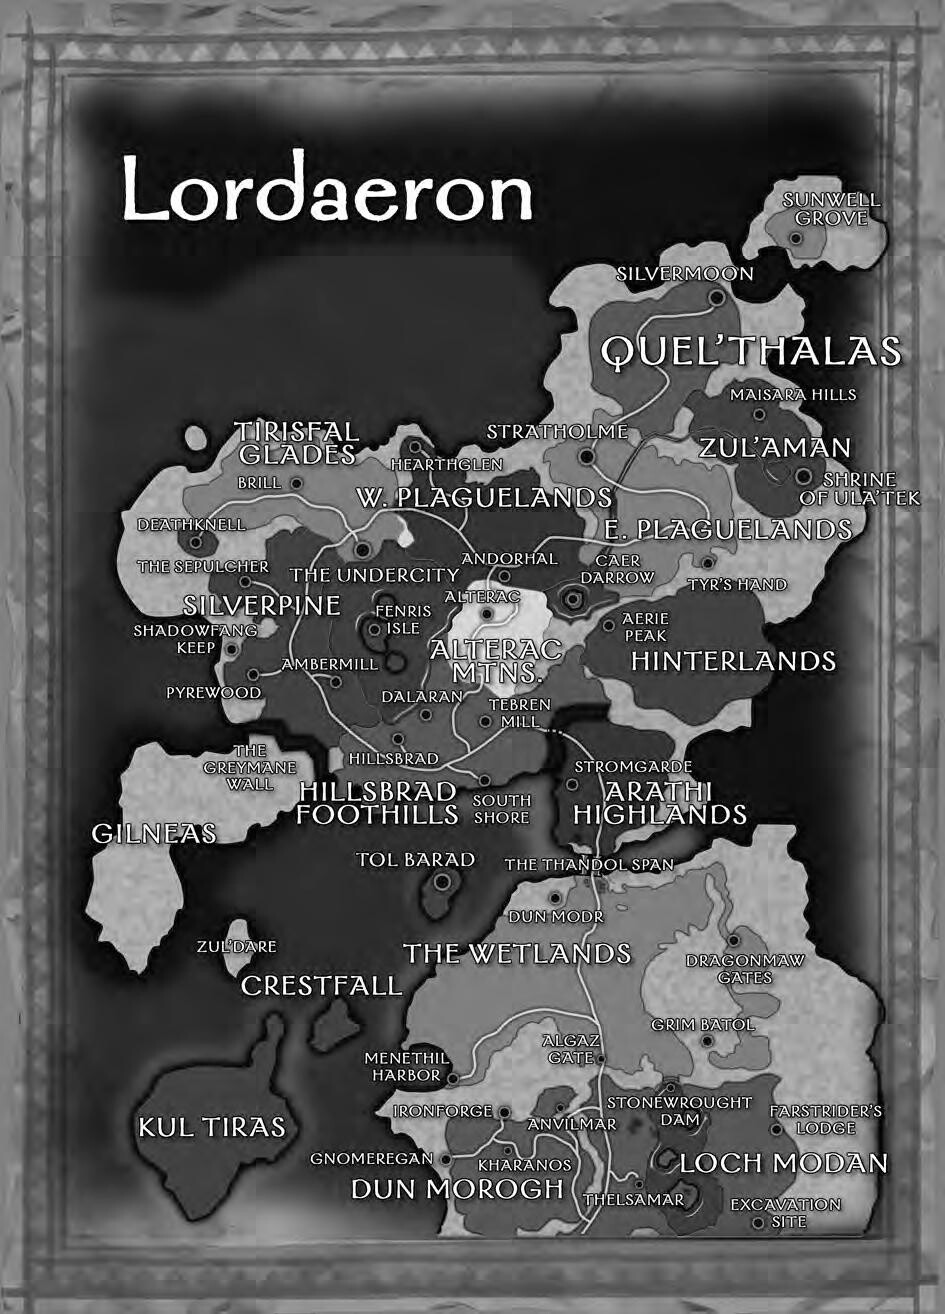 Die Insel Kul Tiras war auf der Karte von Loradaeron eingezeichnet (links unten), die dem Originalspiel beilag. Doch seit dem dritten Addon ist sie verschwunden. 